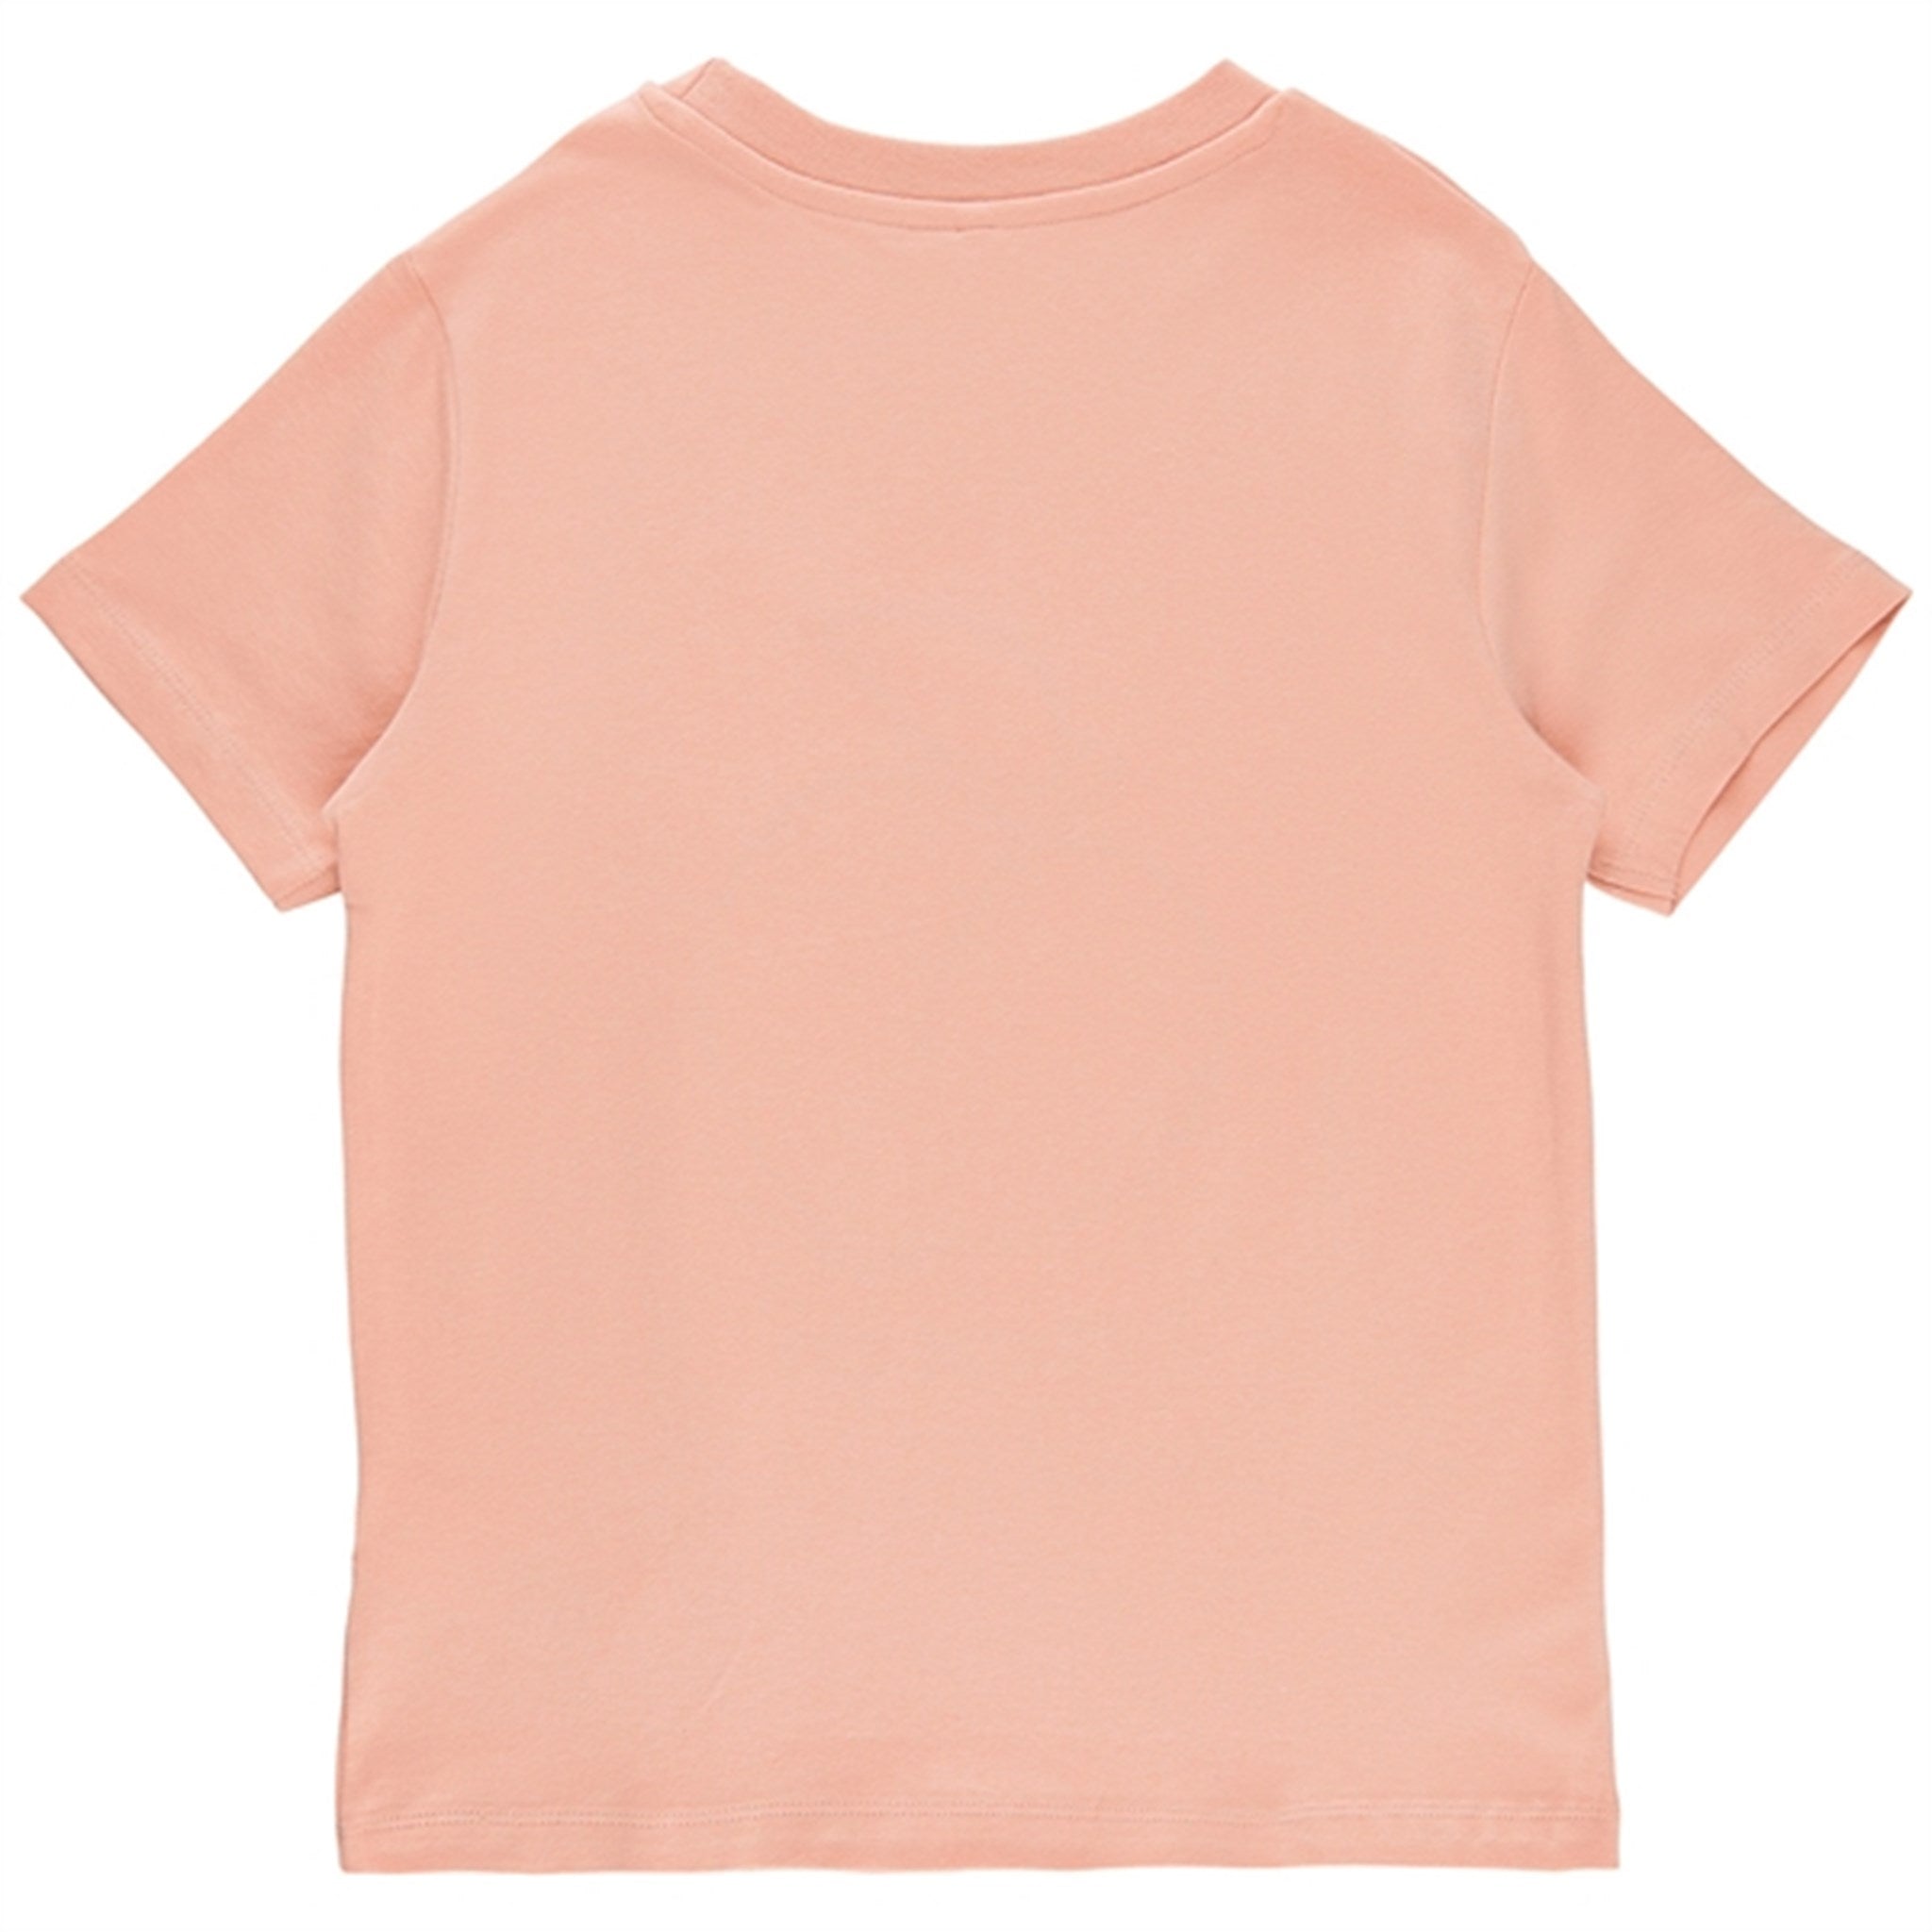 THE NEW Peach Beige Feach T-shirt 3